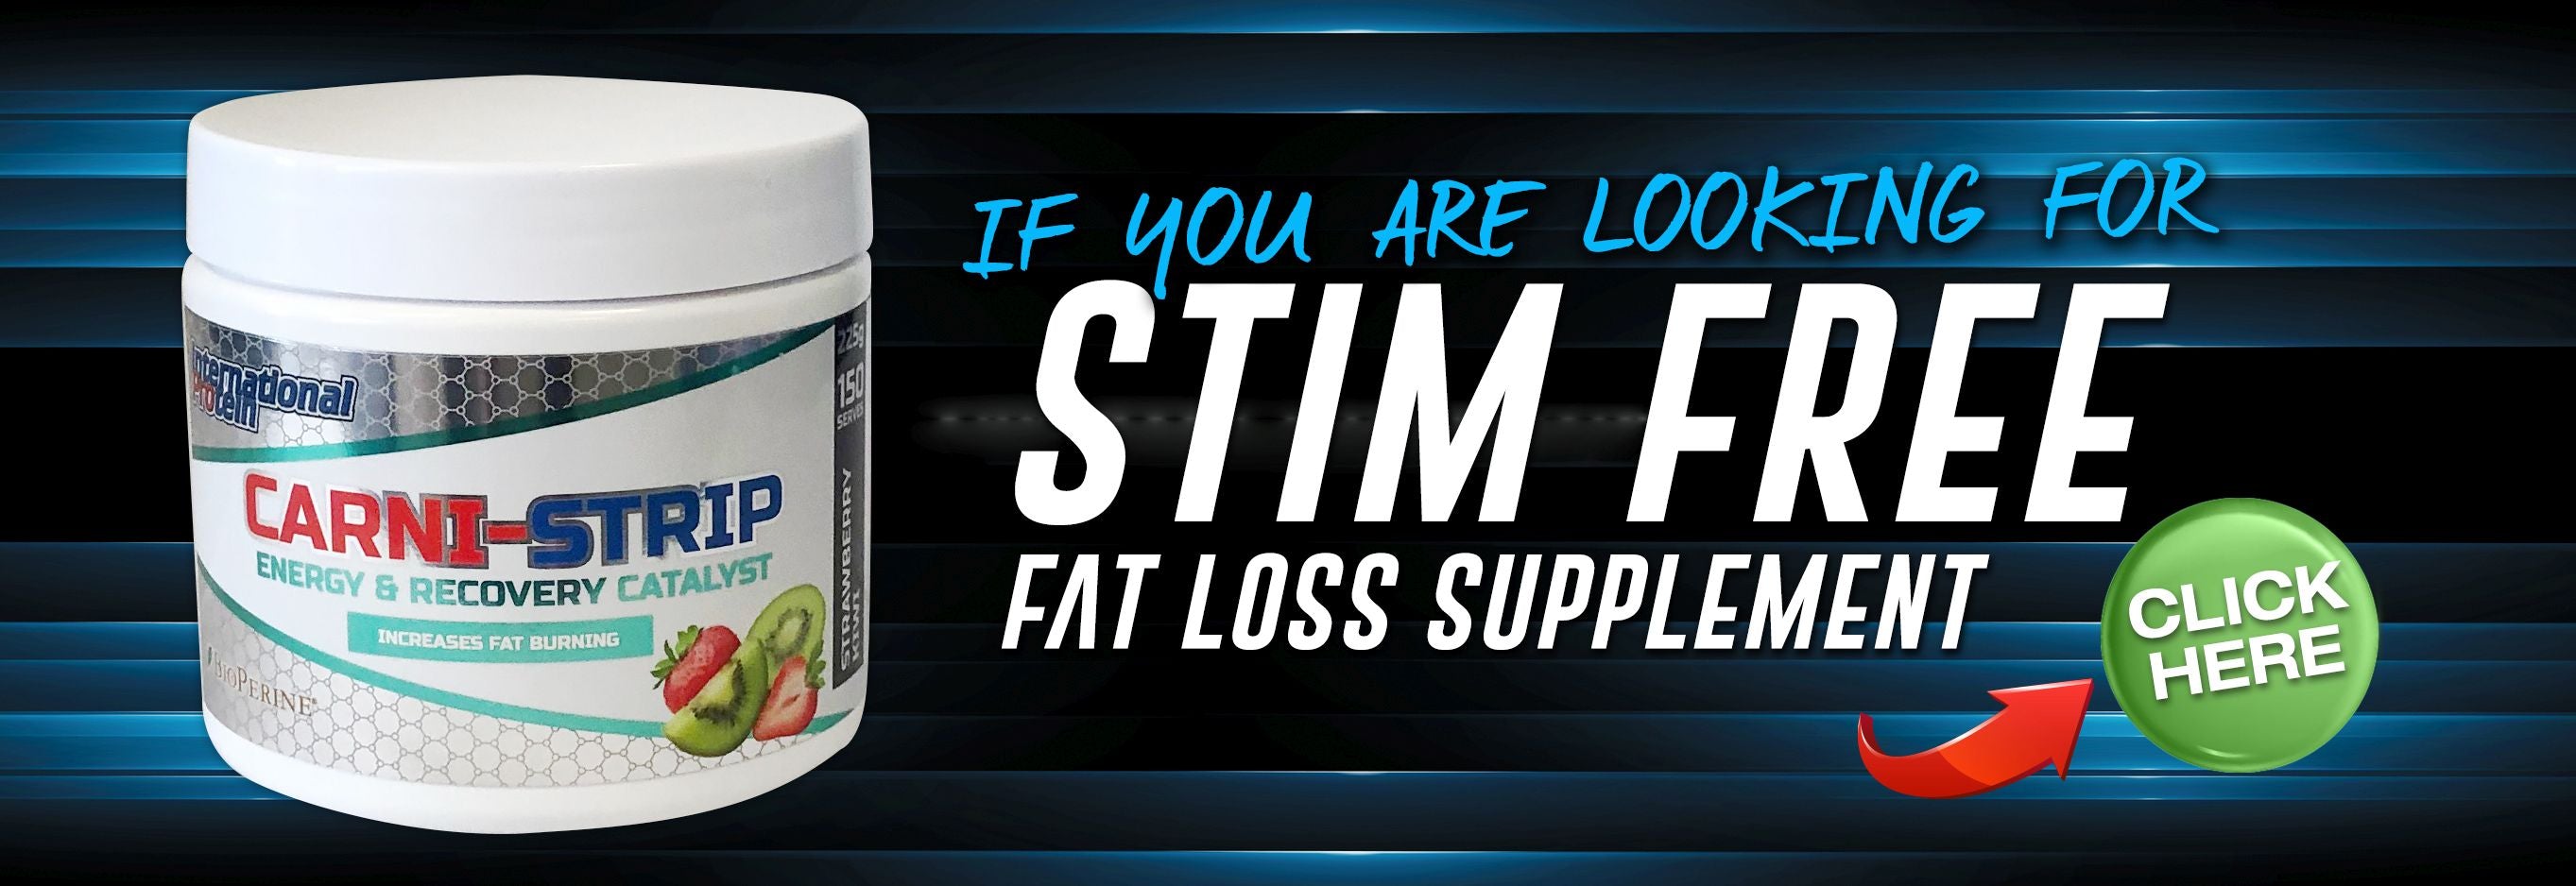 Carni Strip Stim Free Fat Loss Supplement